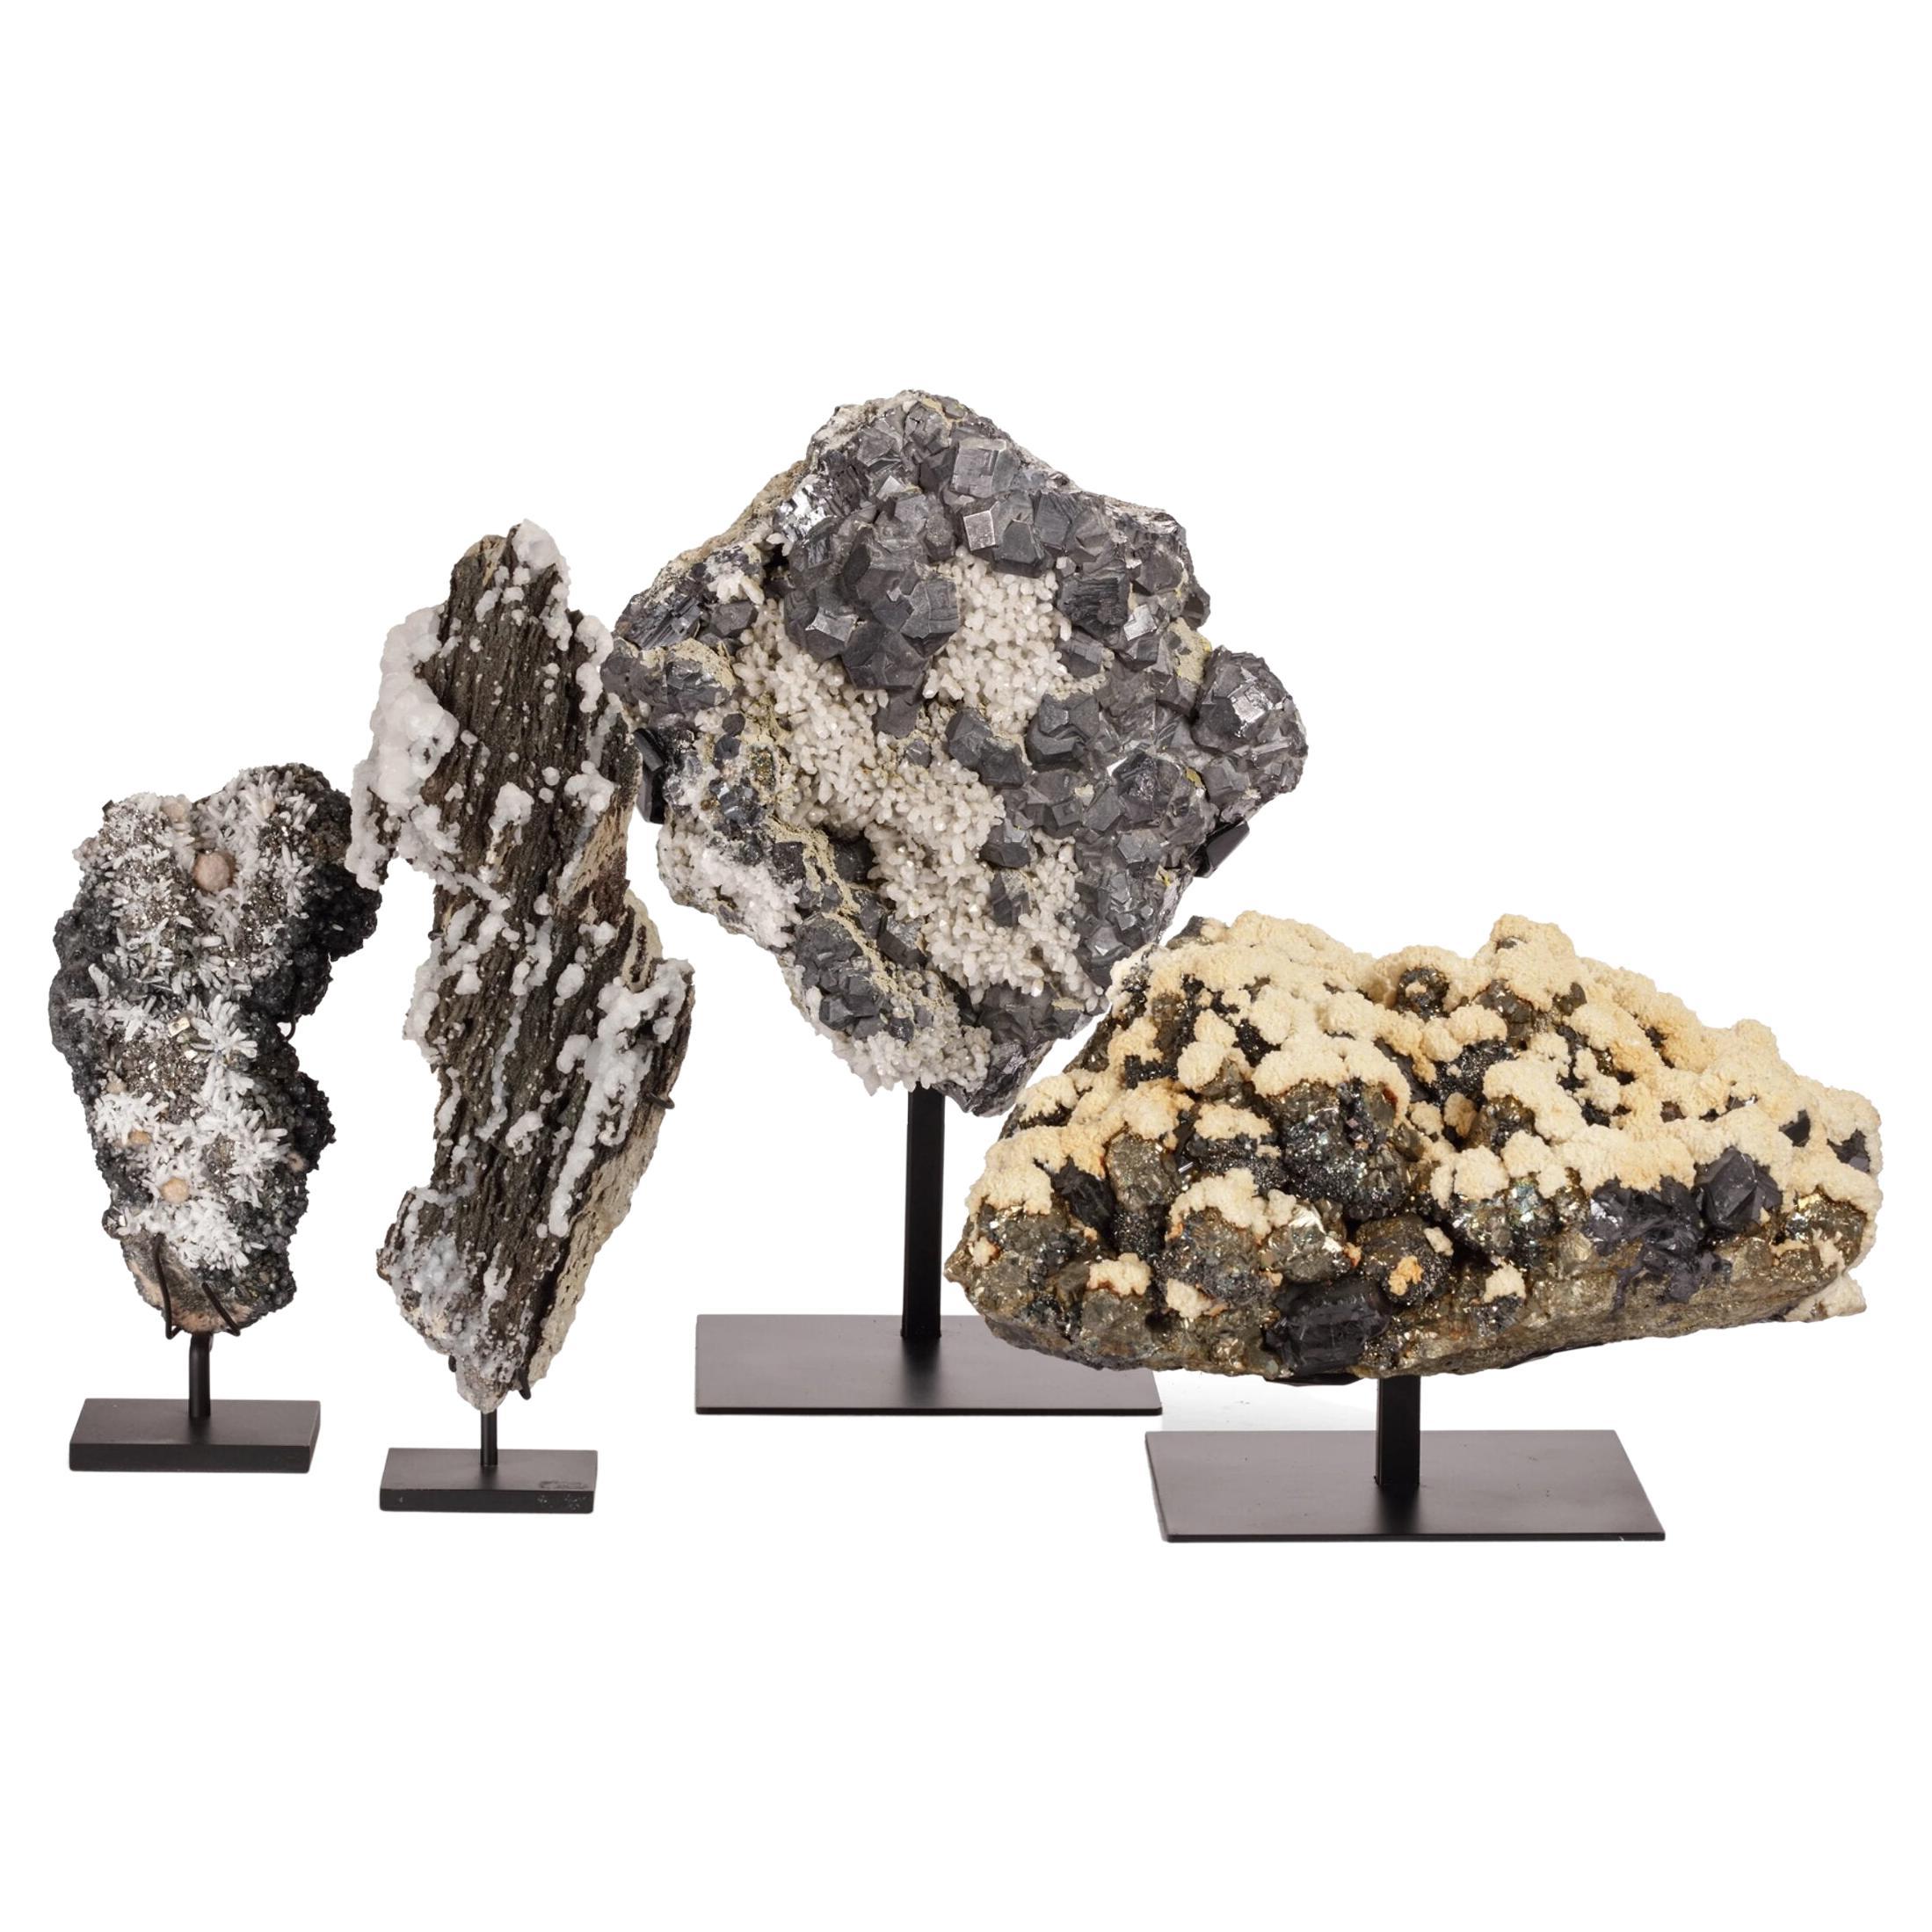 Collection de superbes spécimens minéraux formés naturellement comme des montagnes enneignées